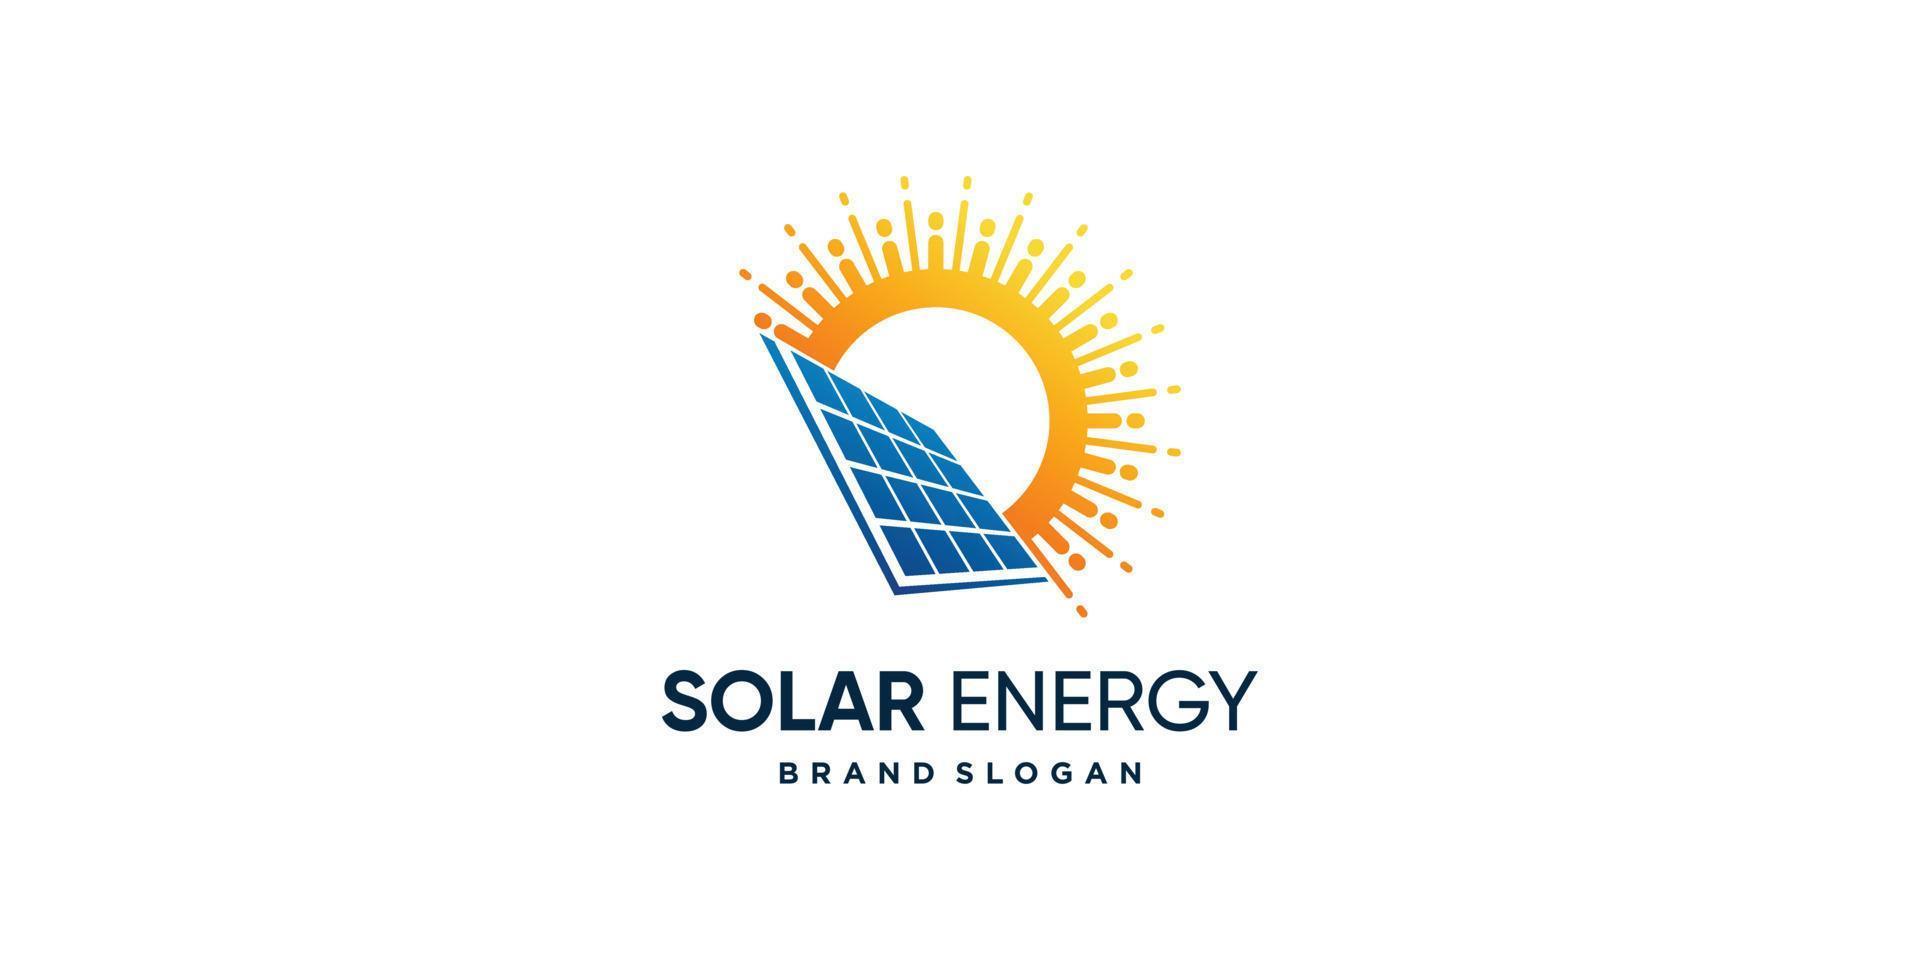 diseño de logotipo solar con vector premium de concepto creativo moderno